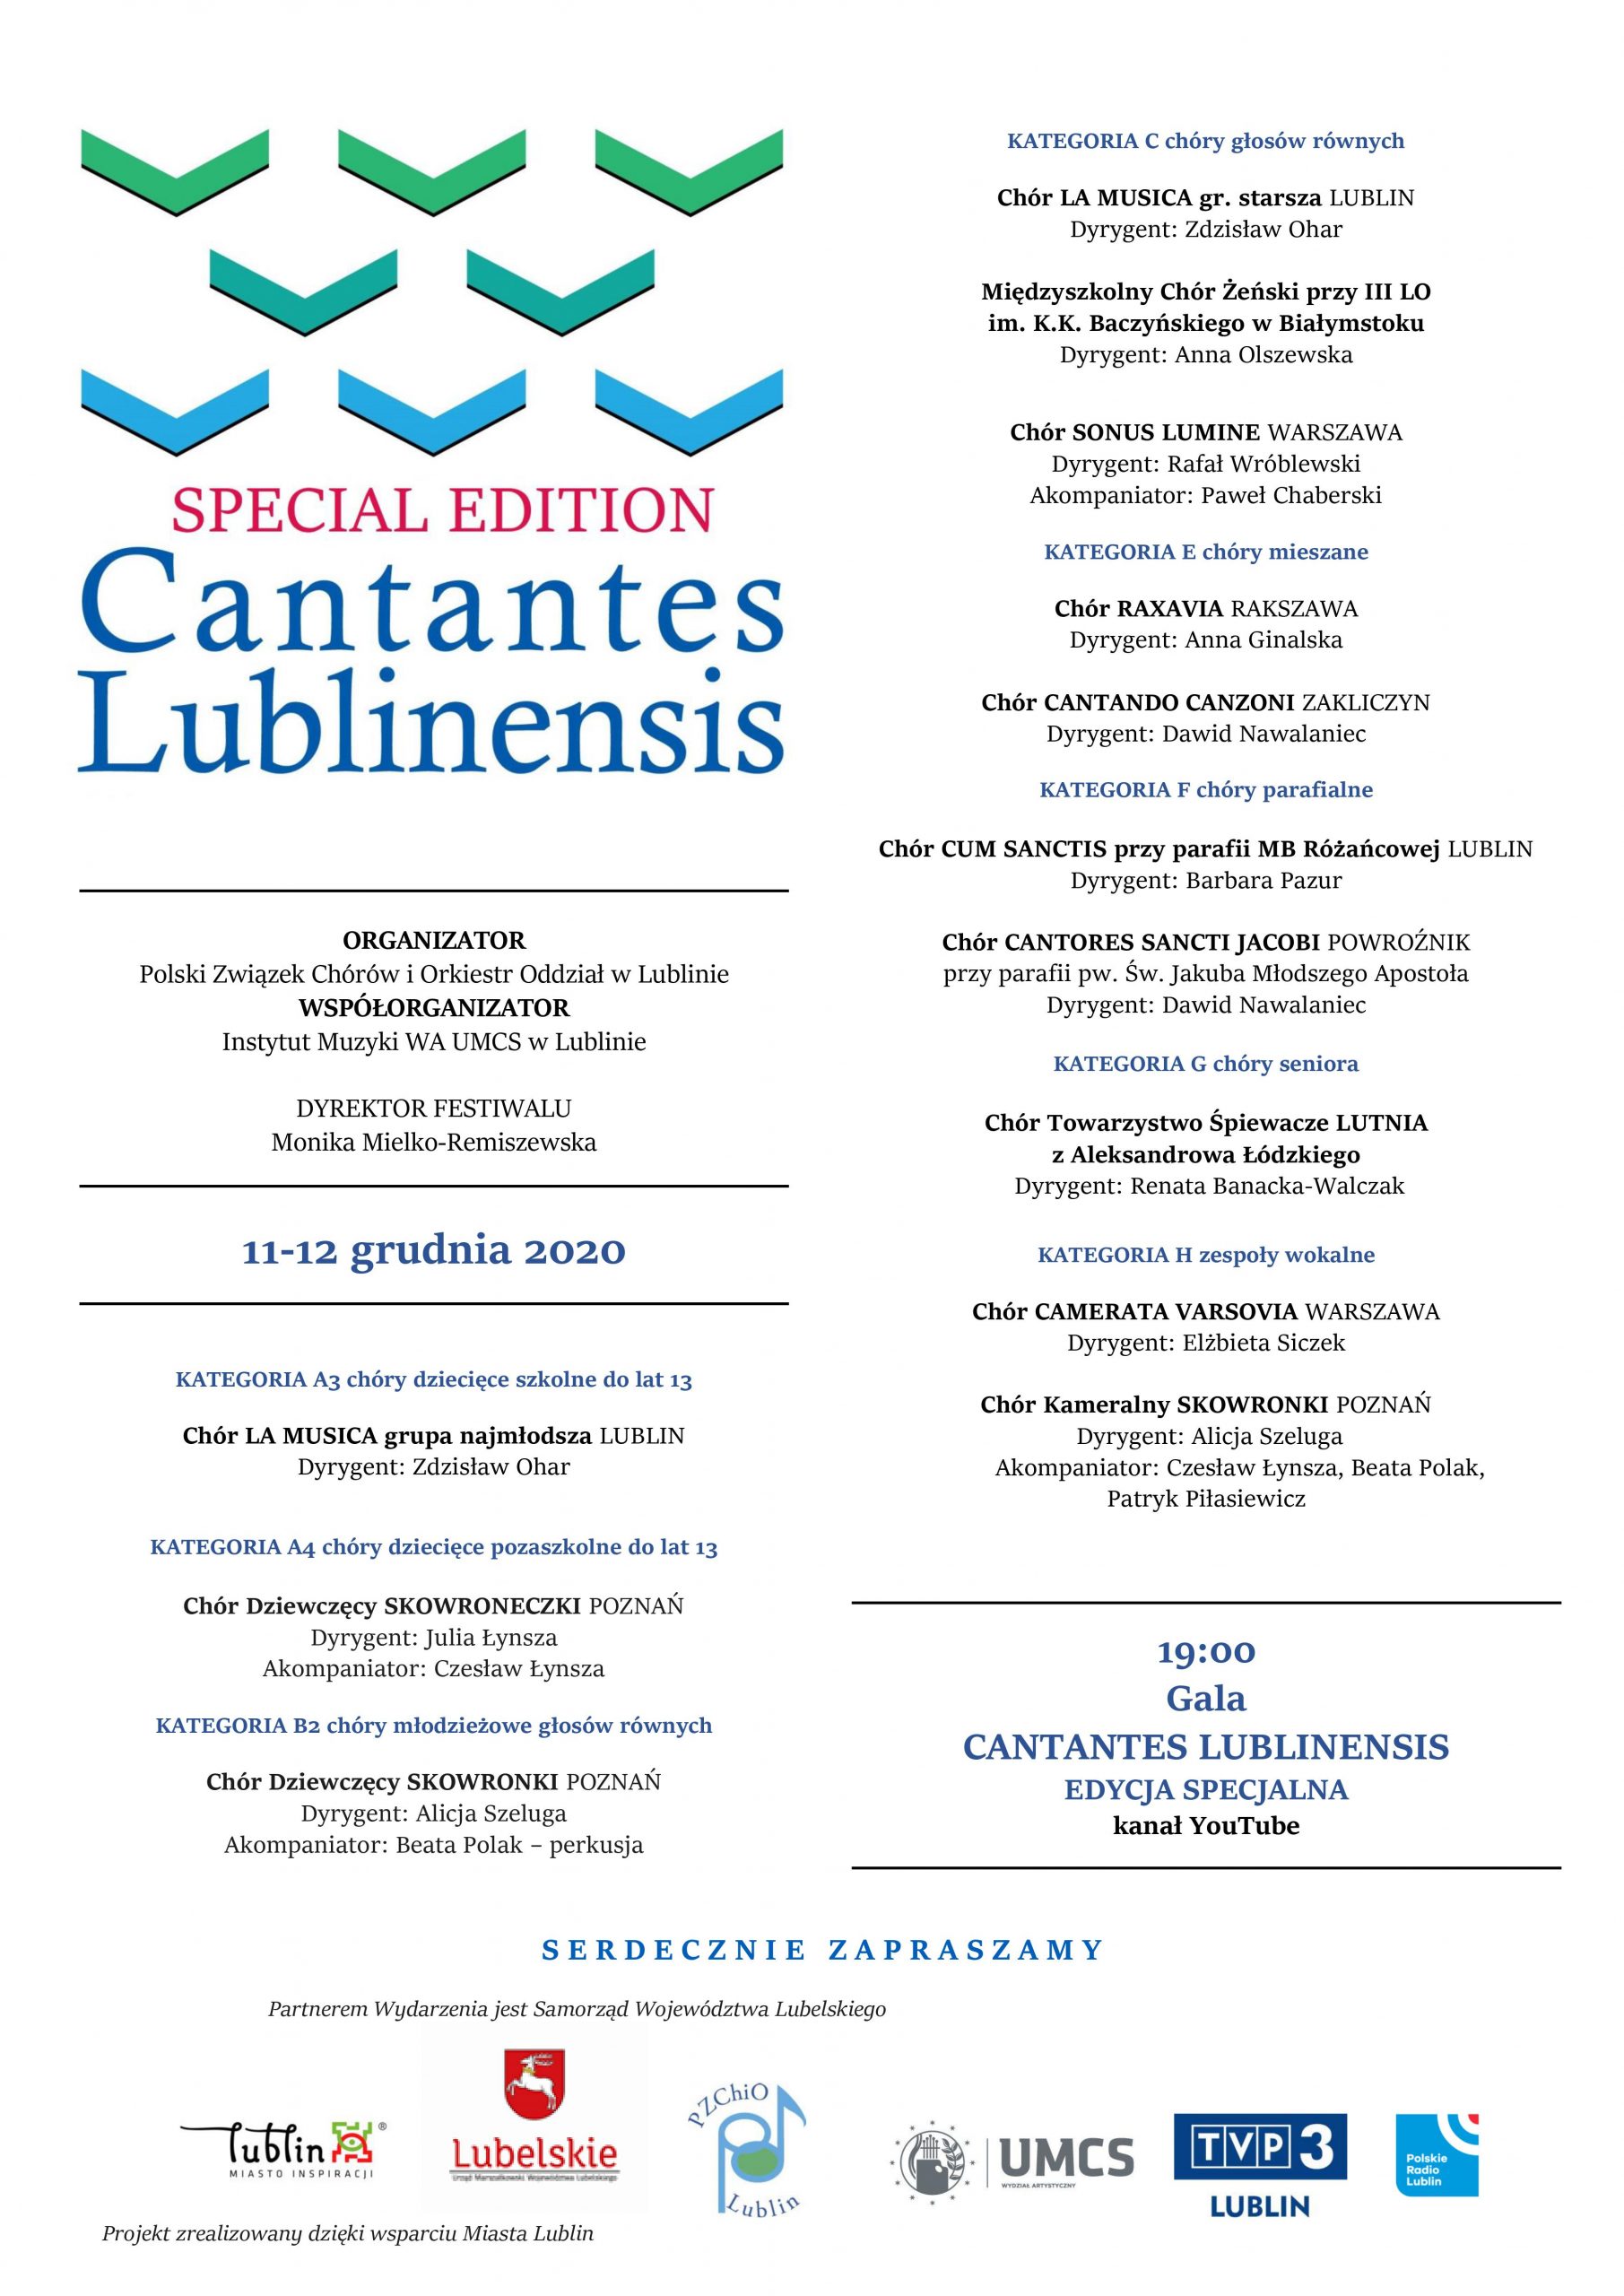 Plakat przedstawiający plan wydarzeń Special Edition Cantantes Lublinensis